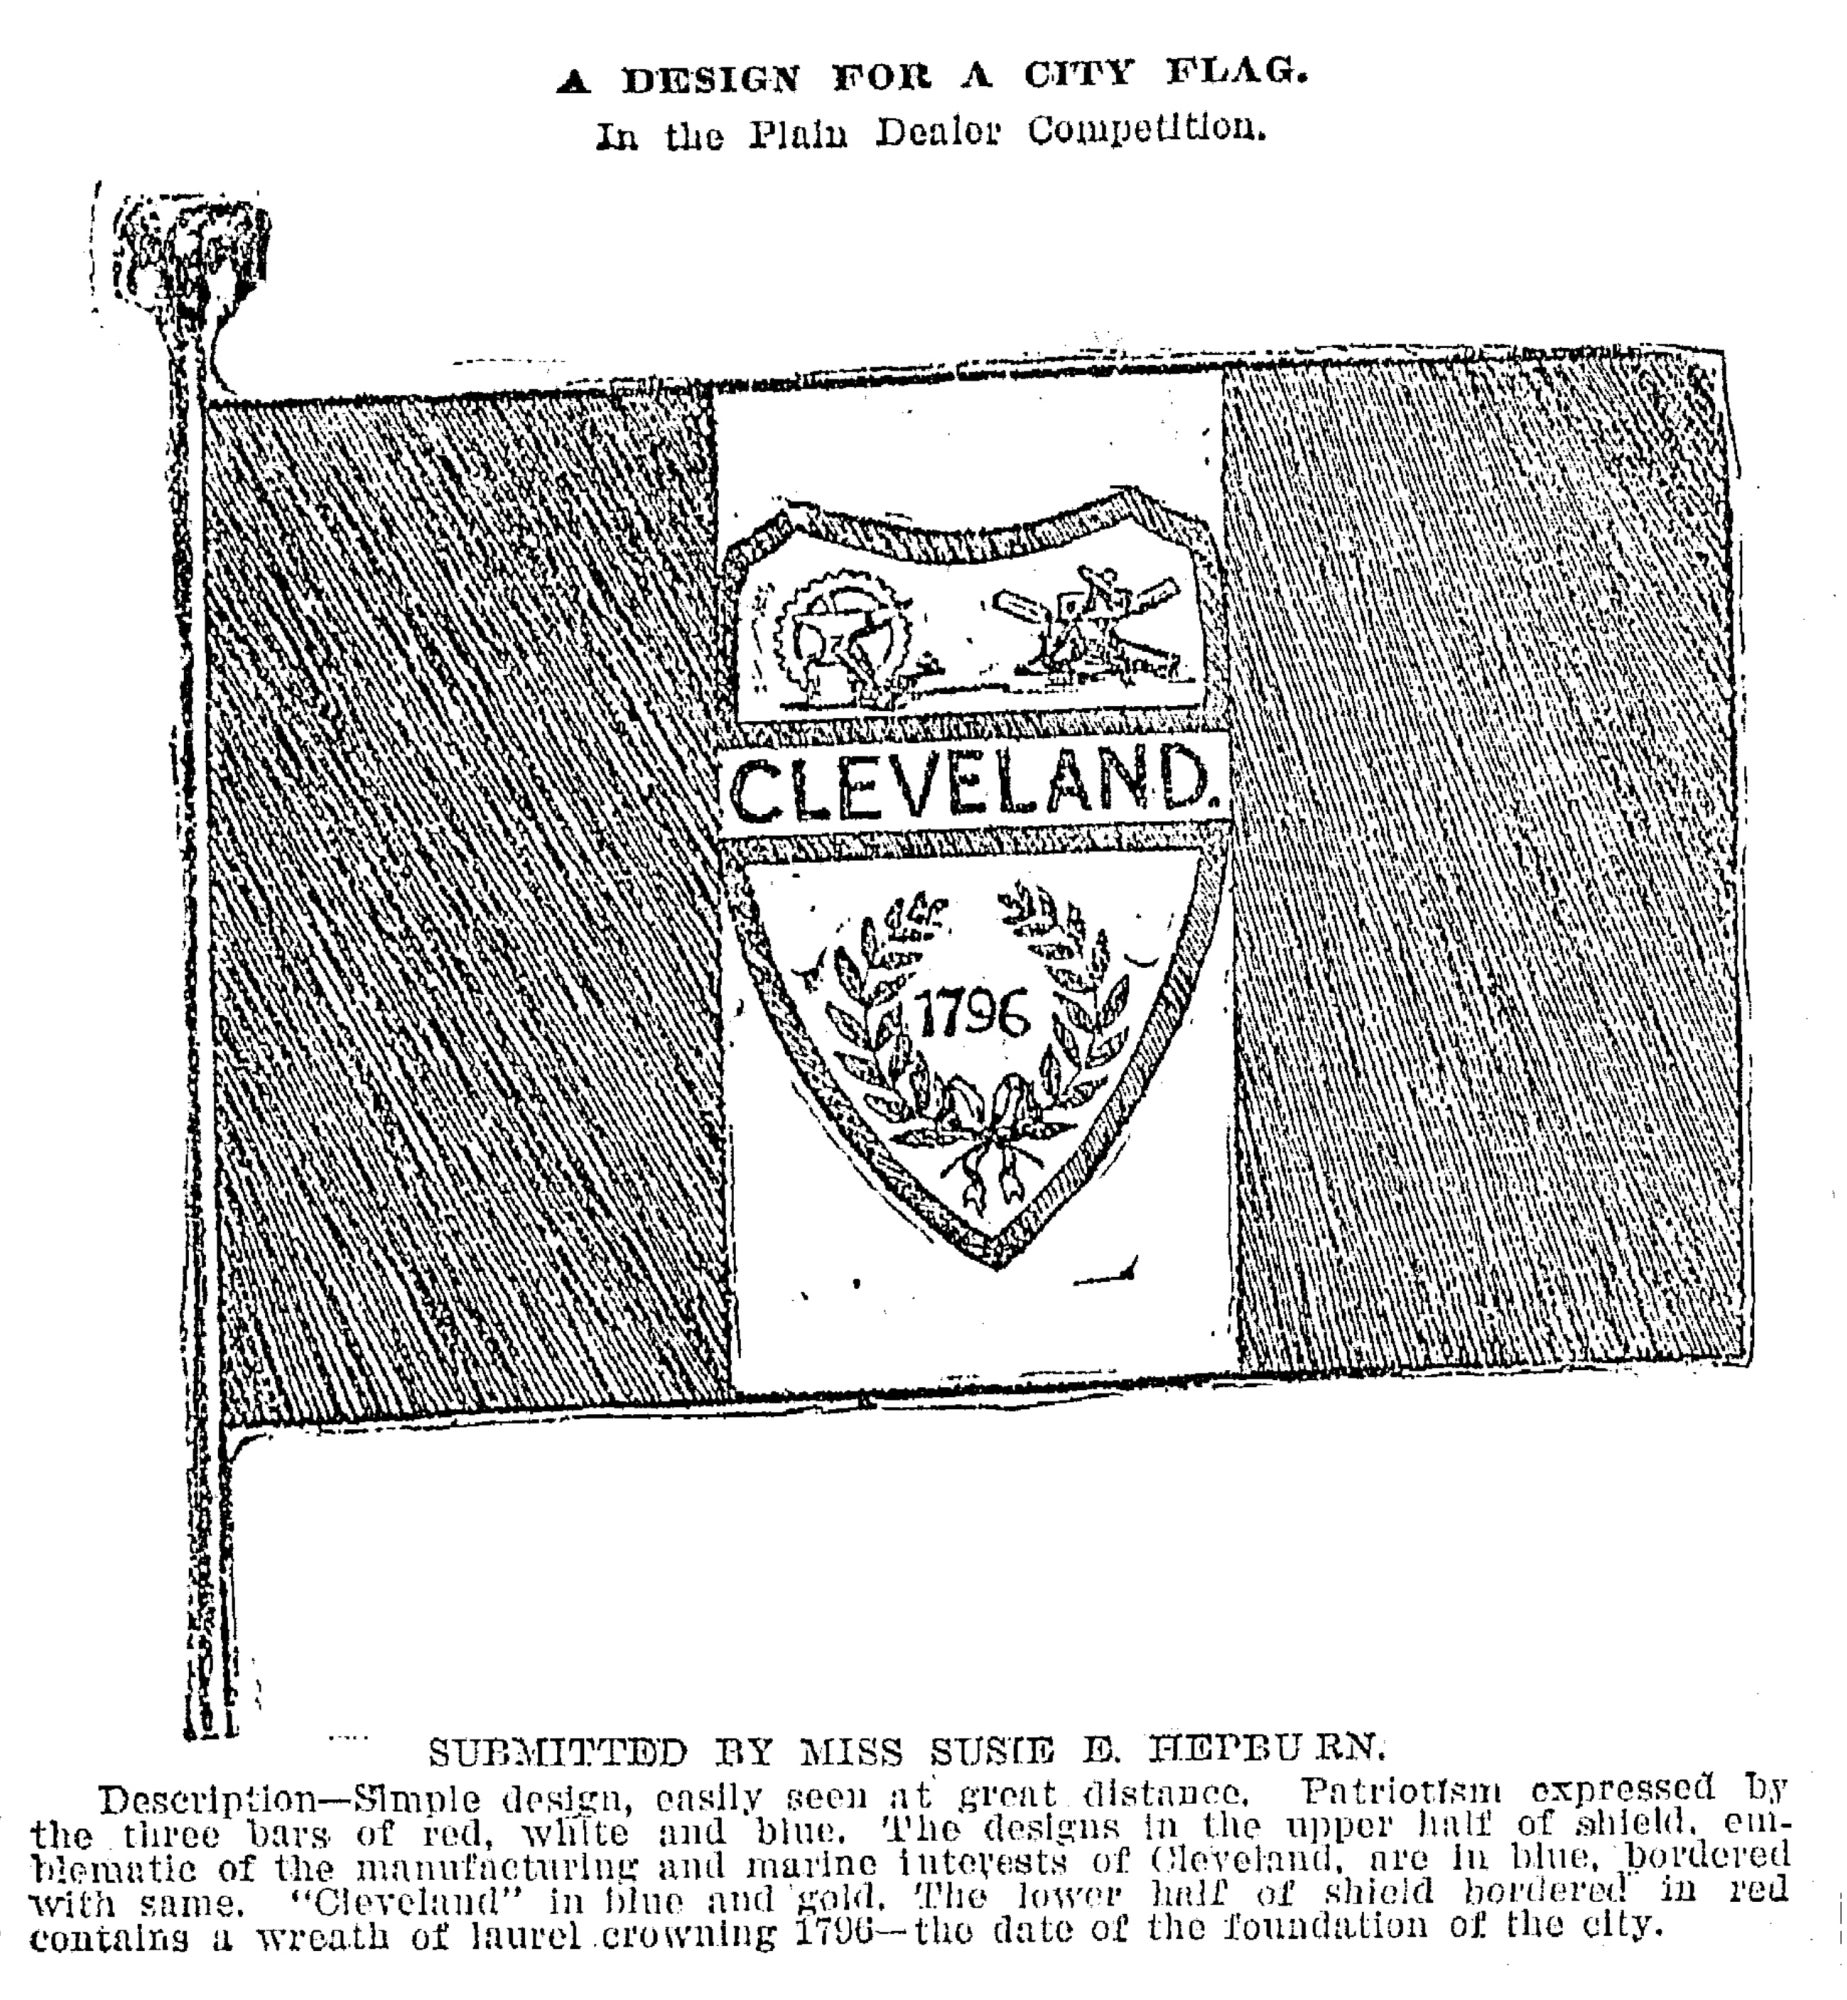 Susan Hepburn's original design for the municipal flag of Cleveland, as published in The Plain Dealer on September 15, 1895